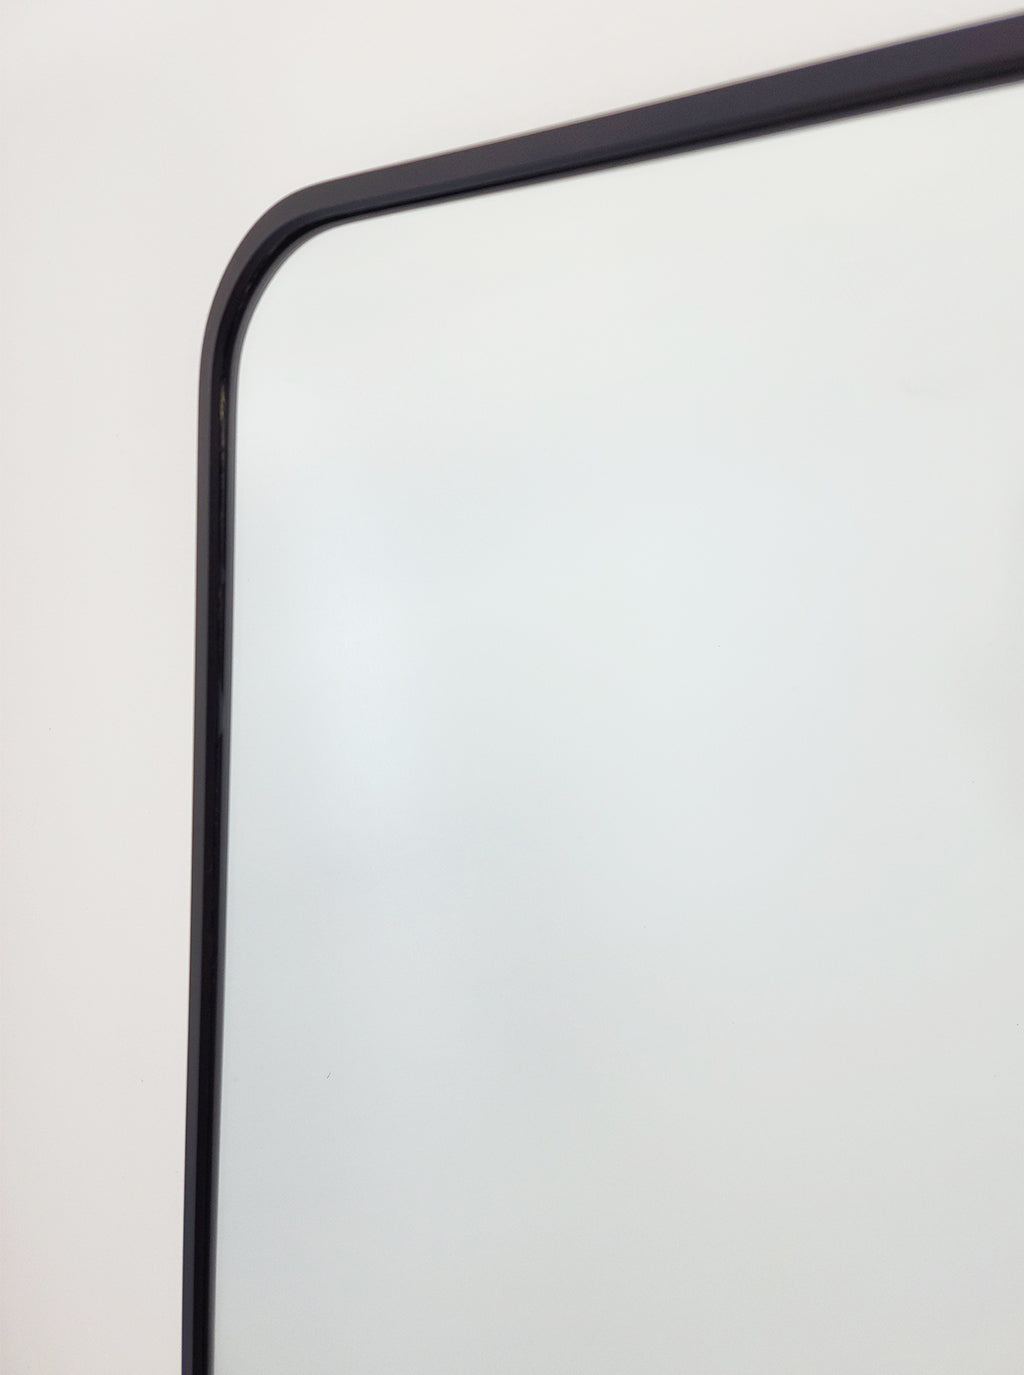 Black Metal Rectangle Mirror - Medium 80cm x 170cm